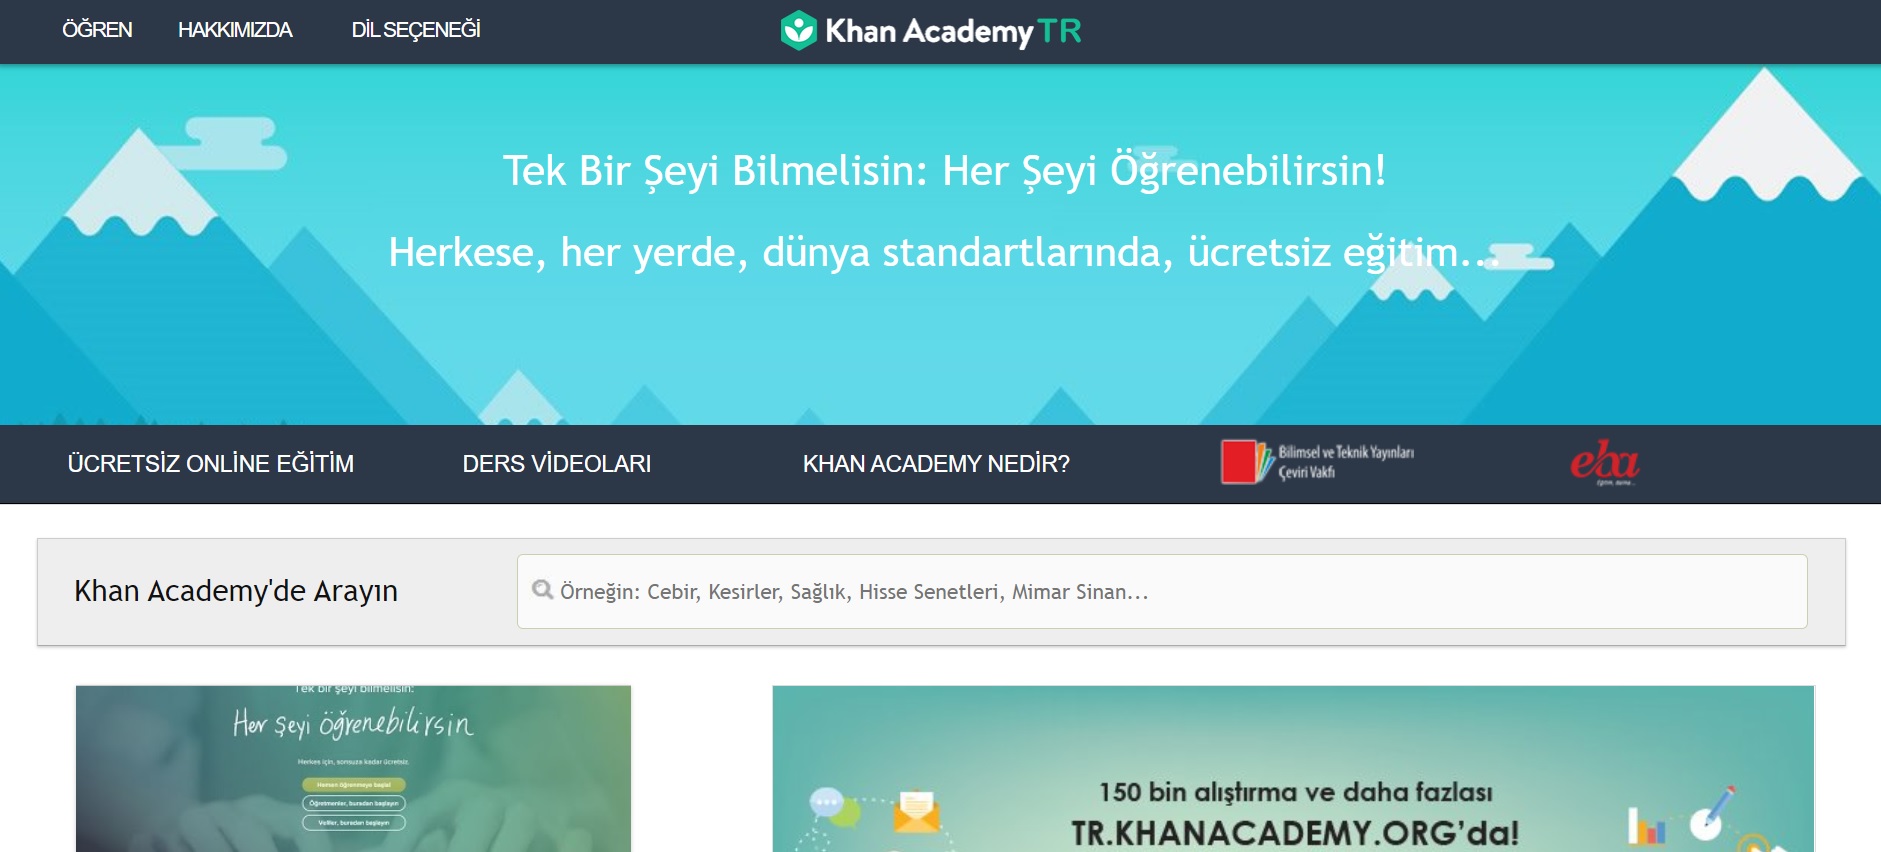 Khan Academy nedir